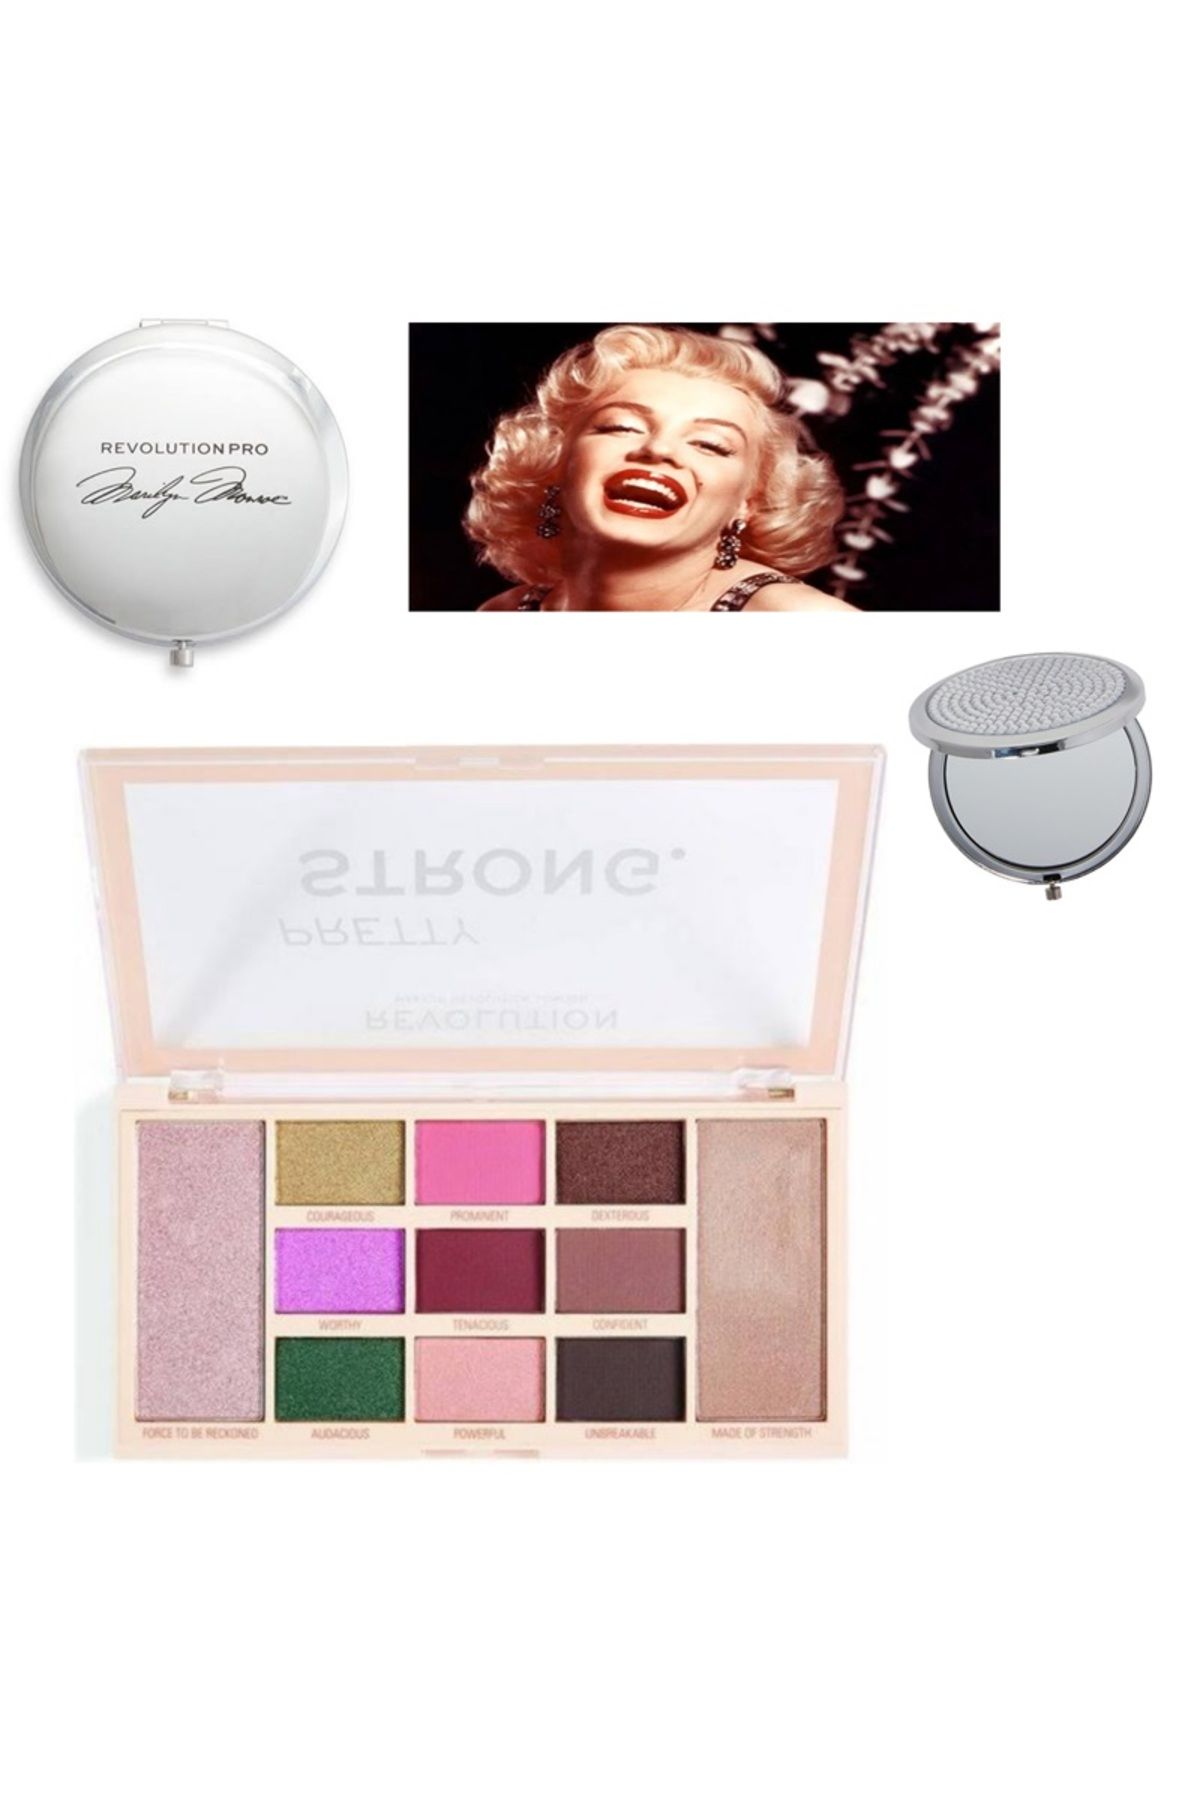 Revolution Marilyn Monroe Göz Farı Makyaj SETİ (ÖZEL ÜRÜN)+Marilyn Monroe Makyaj Aynası HEDİYELİ